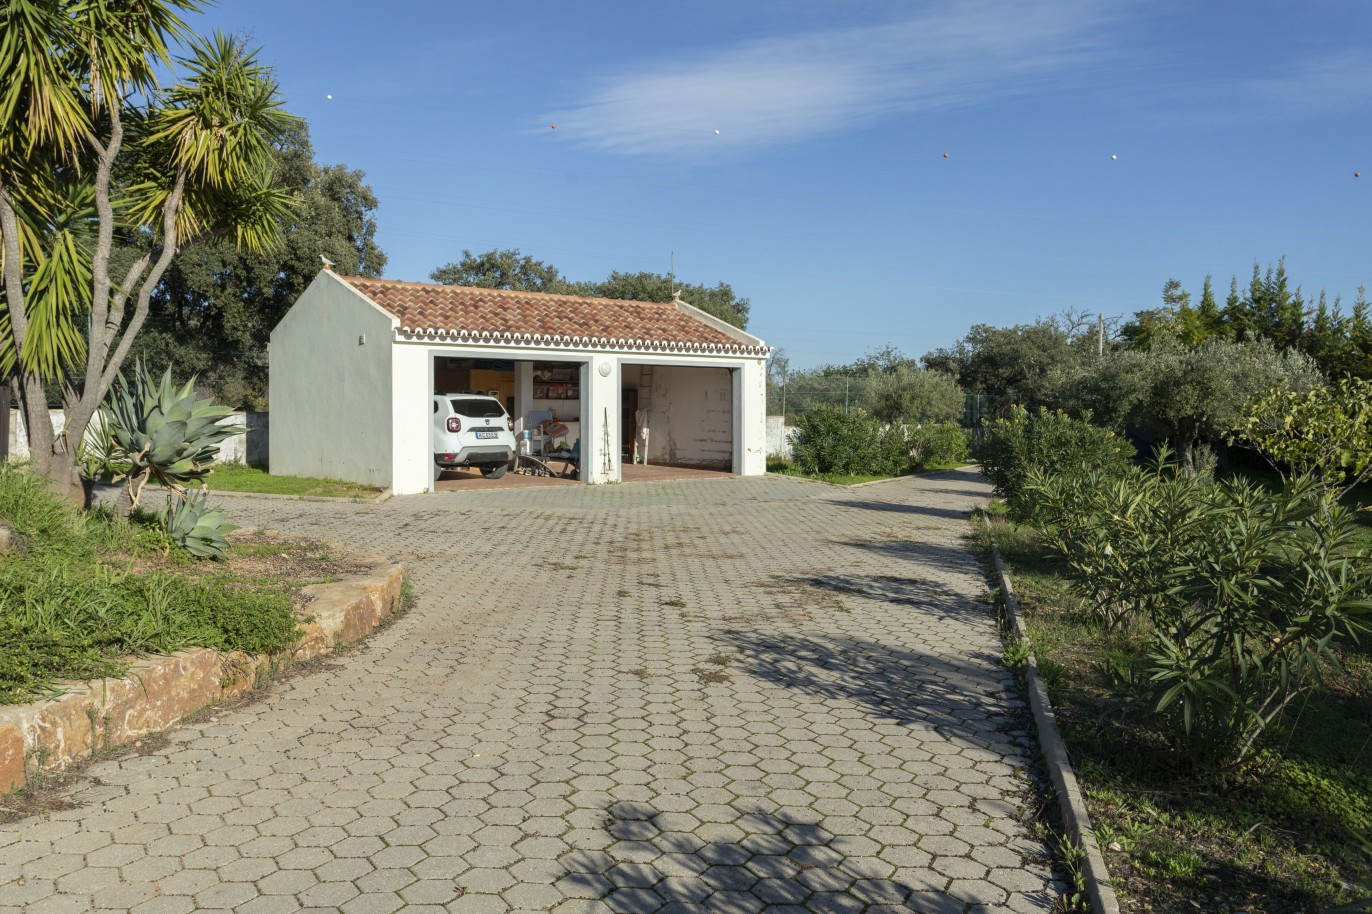 4 bedroom villa with pool, for sale in São Brás de Alportel, Algarve_245034